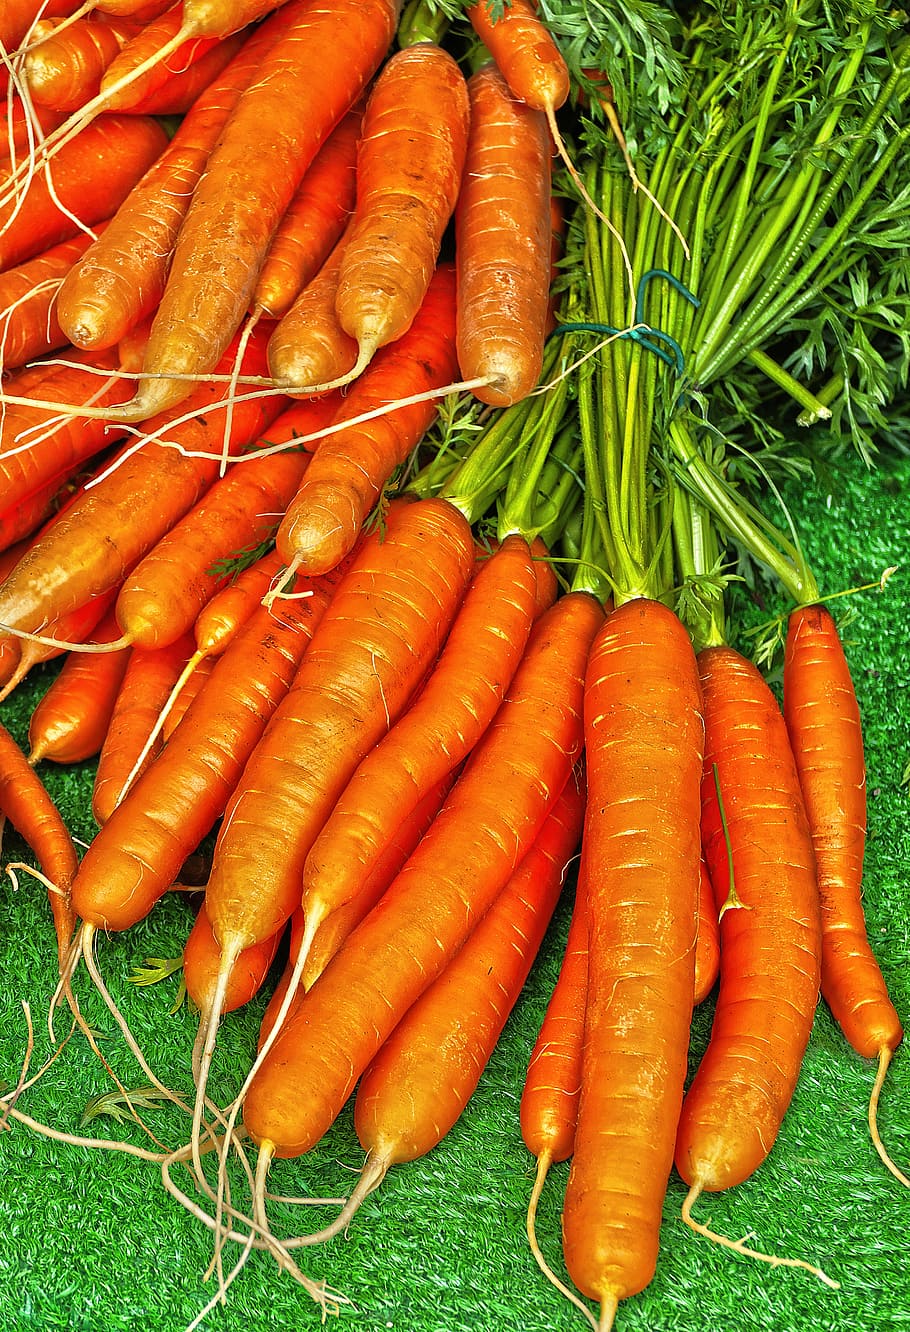 cenoura, beterraba amarela, cenouras, mario, daucus carota, vegetais, caroteno, saudável, cultivador de vegetais, mercado